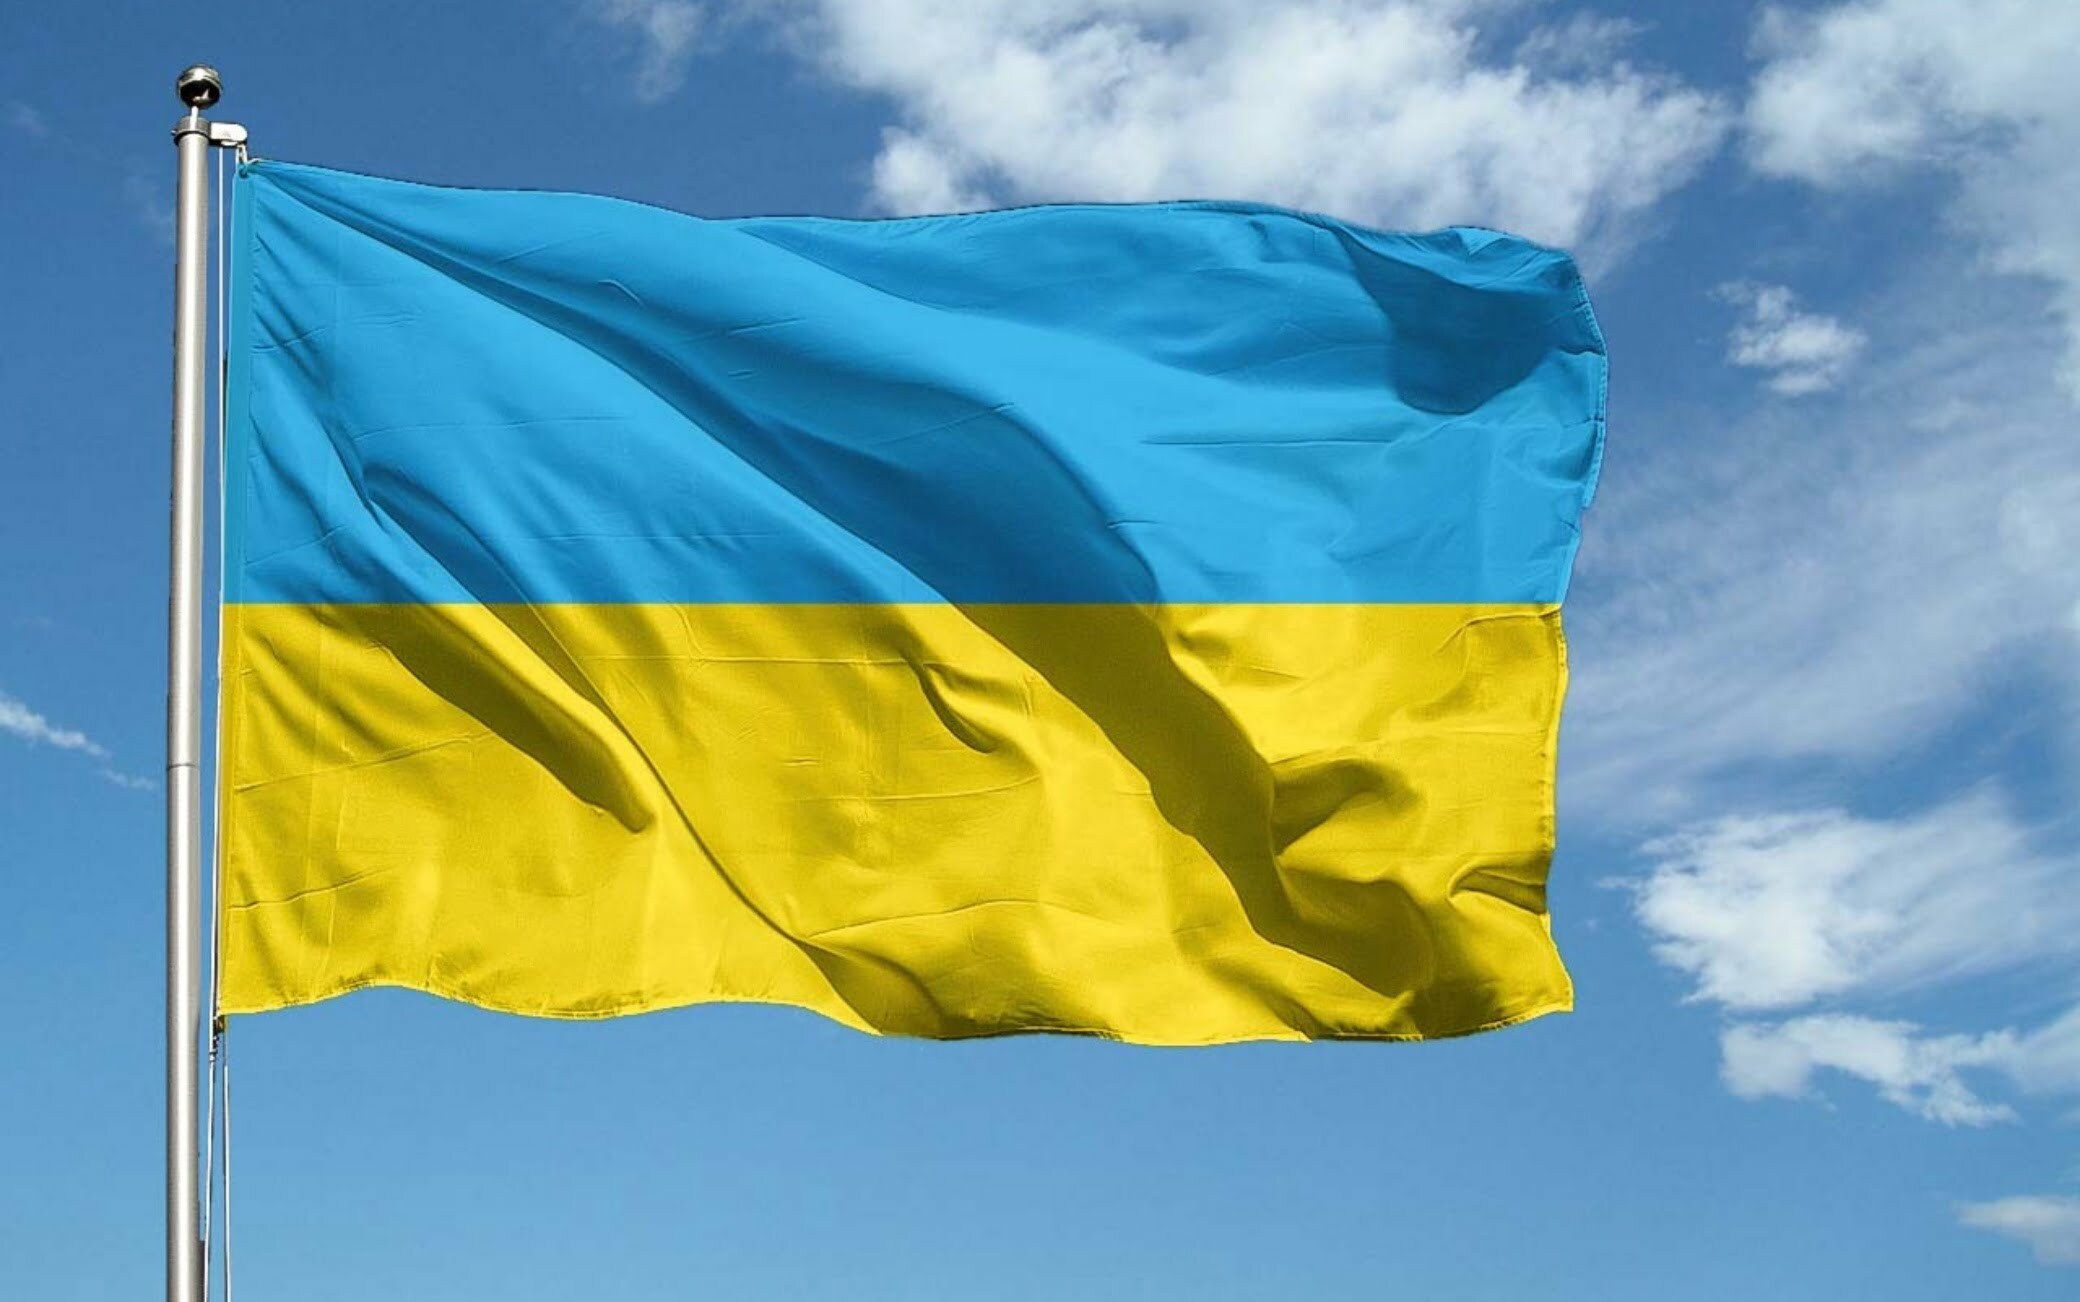 Dal Mugello solidarietà all’Ucraina invasa